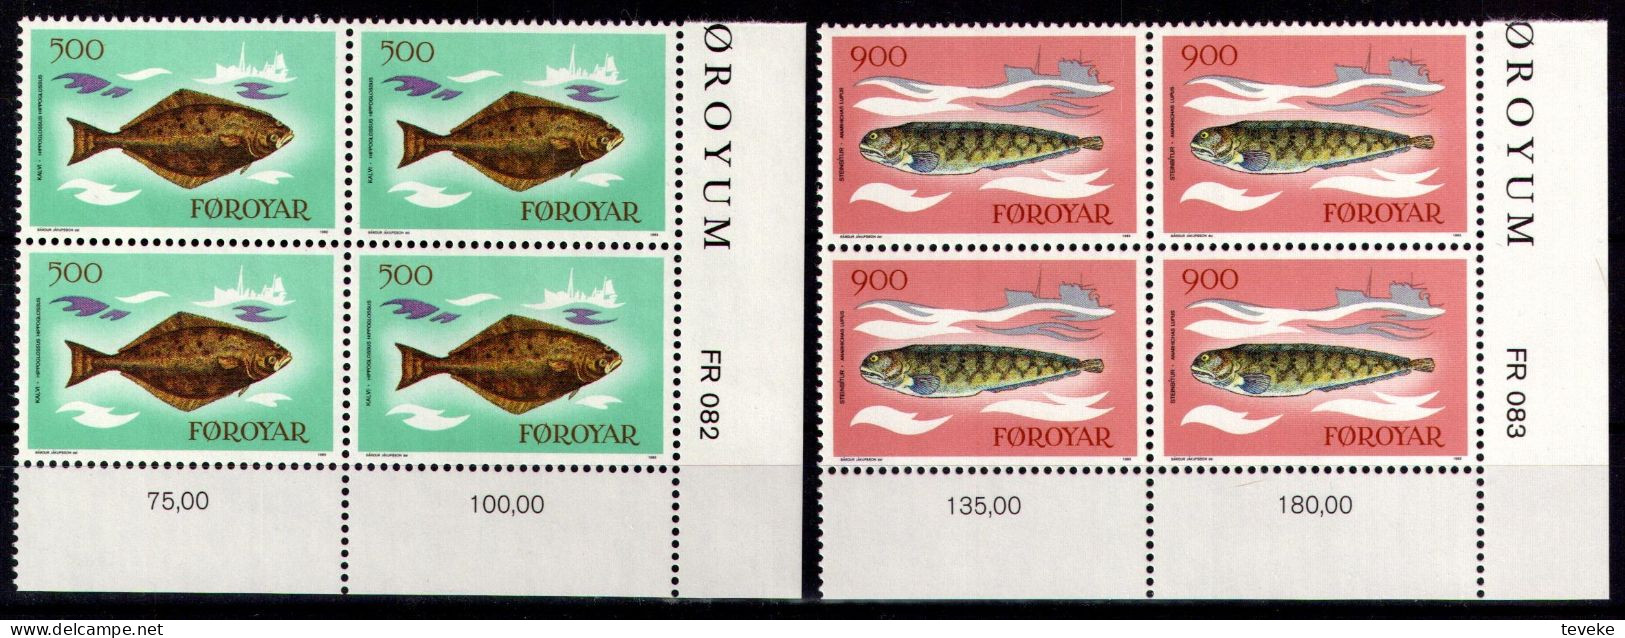 FAEROËR 1983 - MiNr. 86/89 BL4 - **/MNH - Fauna - Fishes - Faeroër